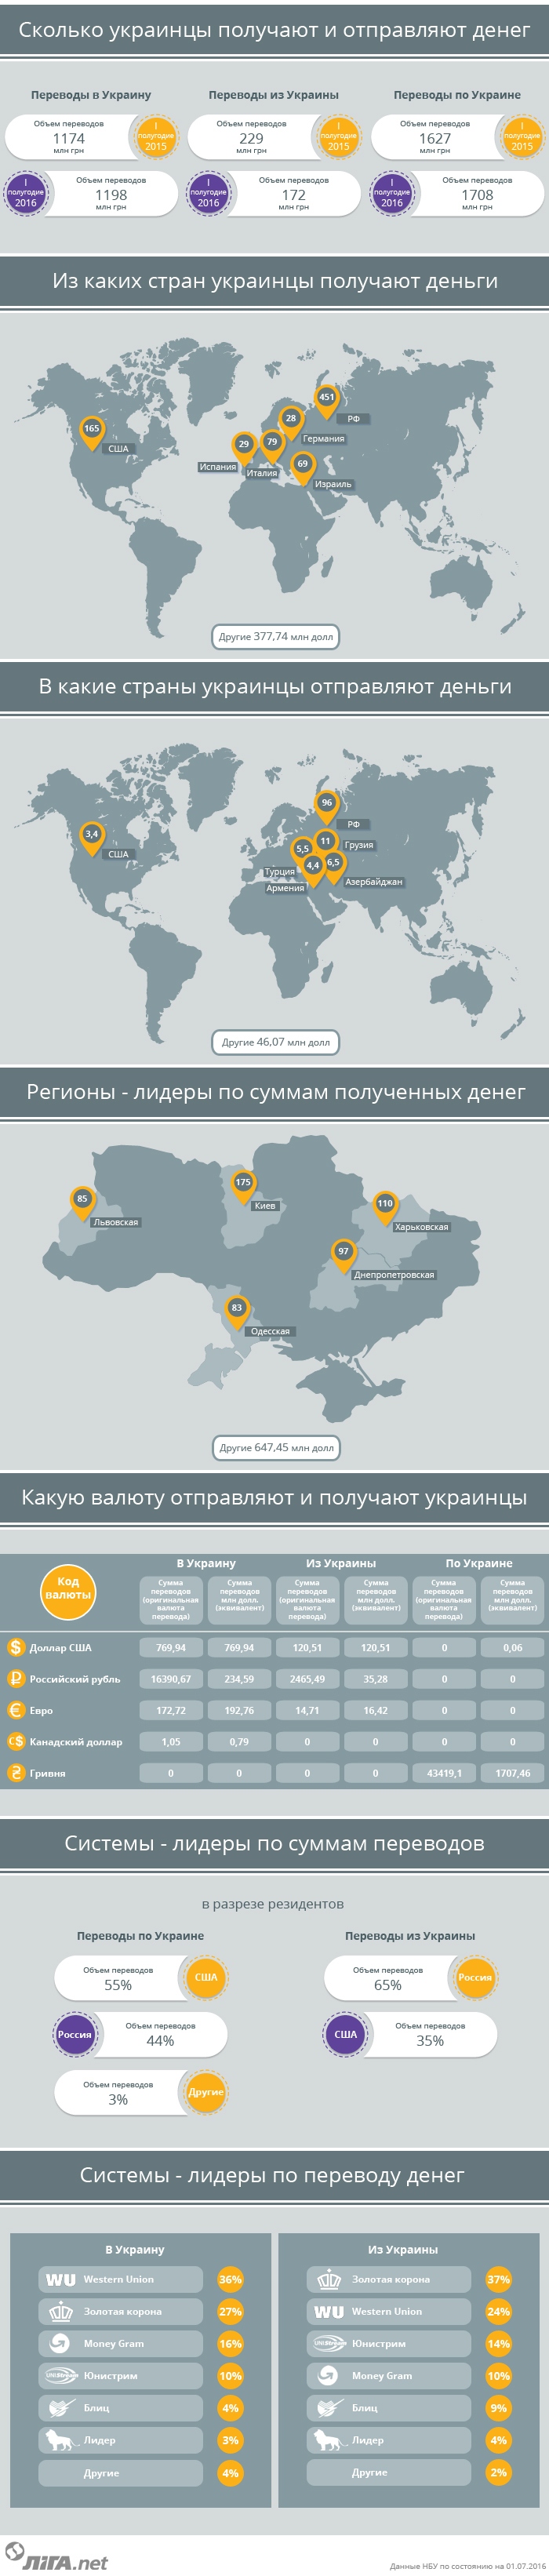 Инфографика:Материальная помощь. Сколько денег украинцы получают